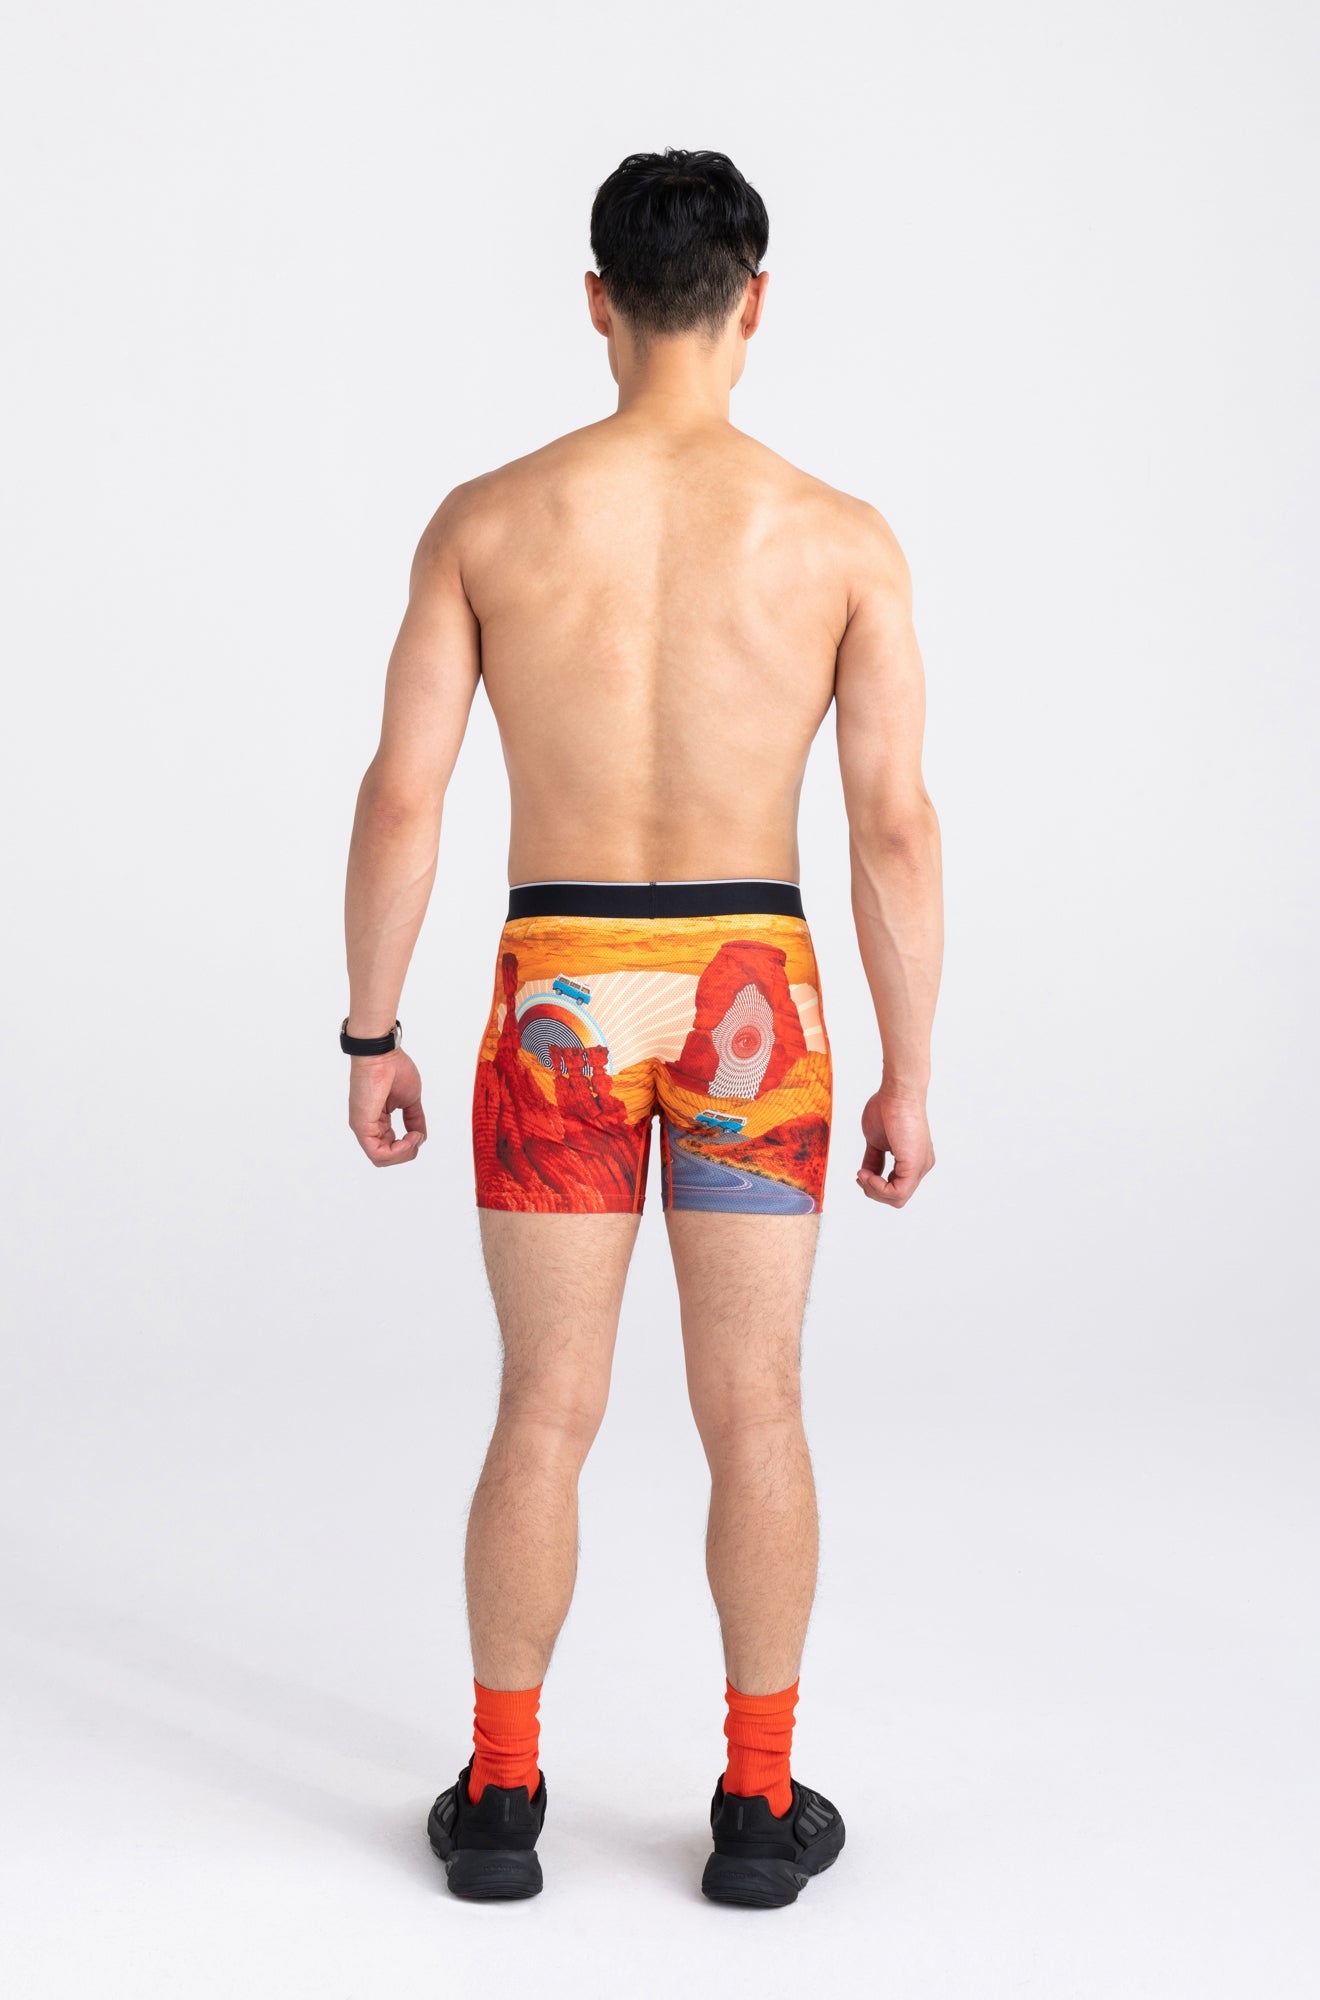 Boxer pour homme par Saxx | Volt SXBB29 OUL | Boutique Vvög, vêtements mode pour homme et femme